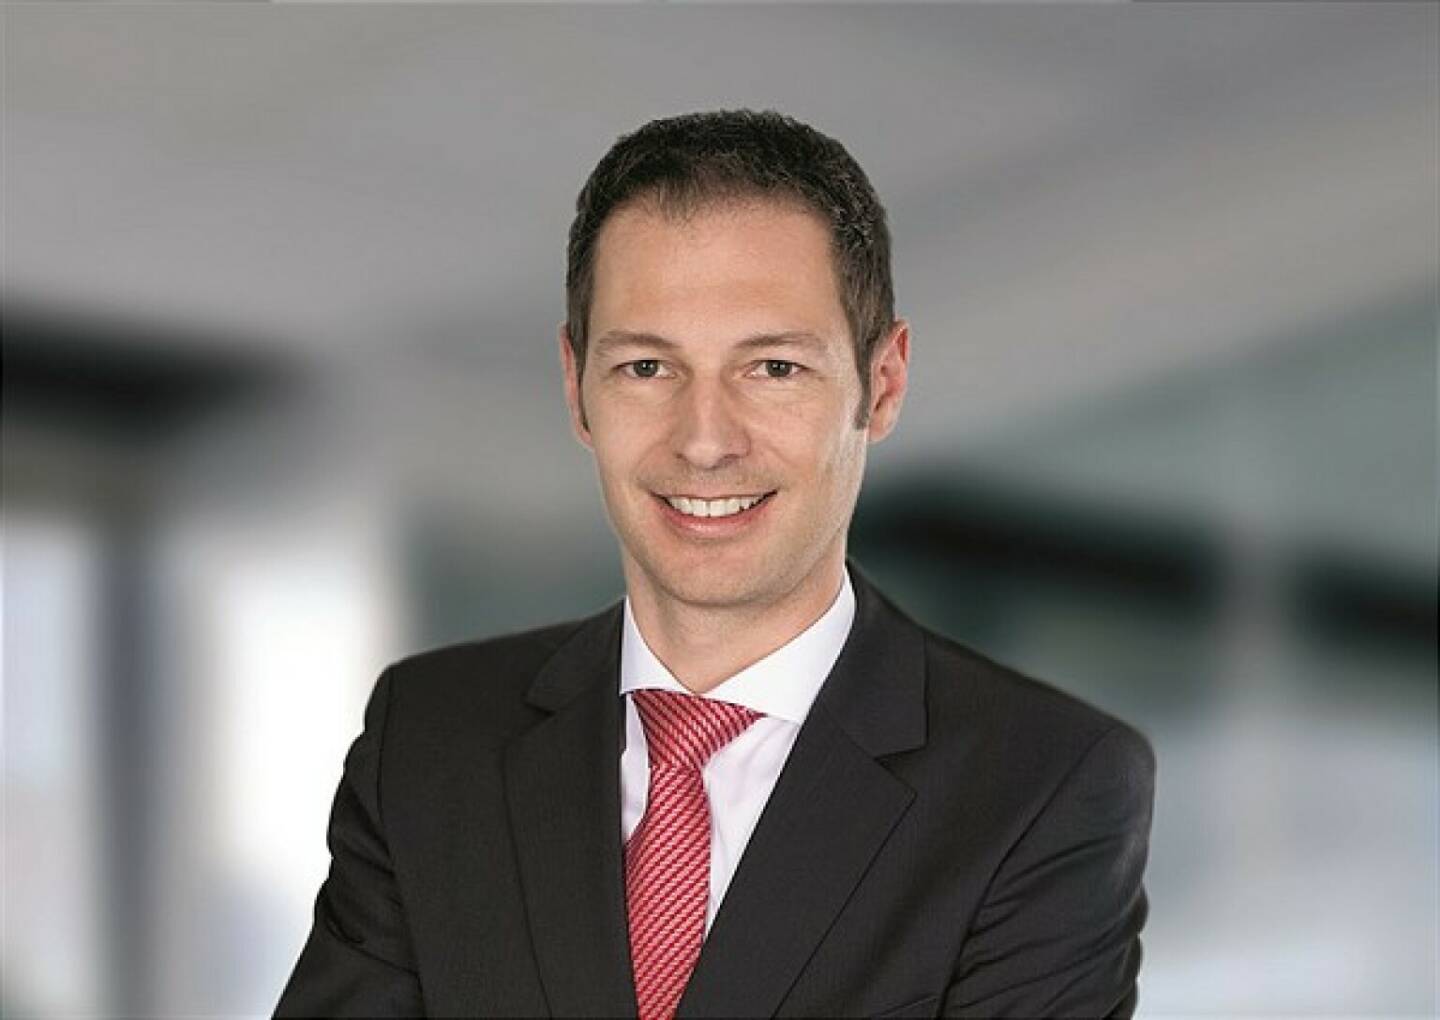 Gregor Zach eitet den Bereich Mergers & Acquisitions (M&A) bei PwC Österreich, Credit: PwC